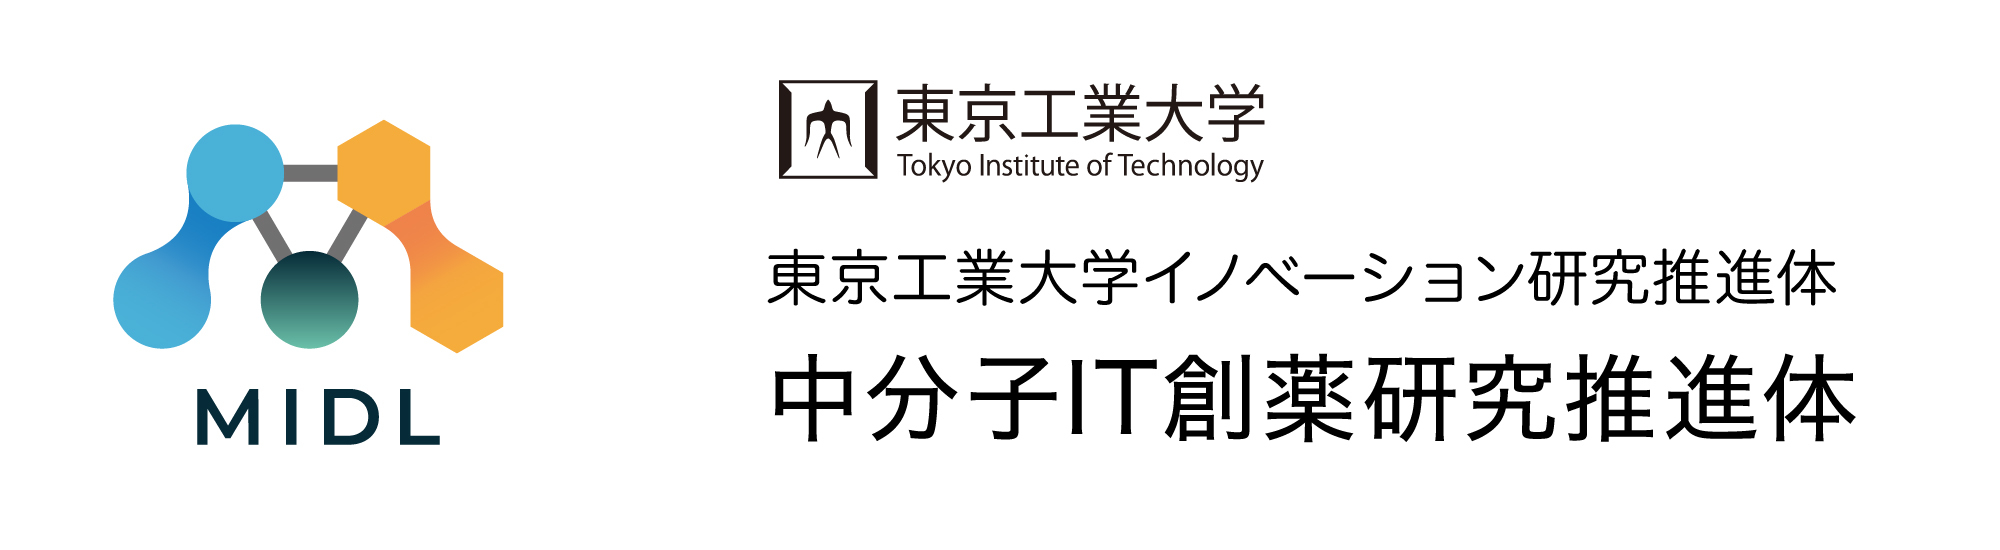 東京工業大学イノベーション研究推進体